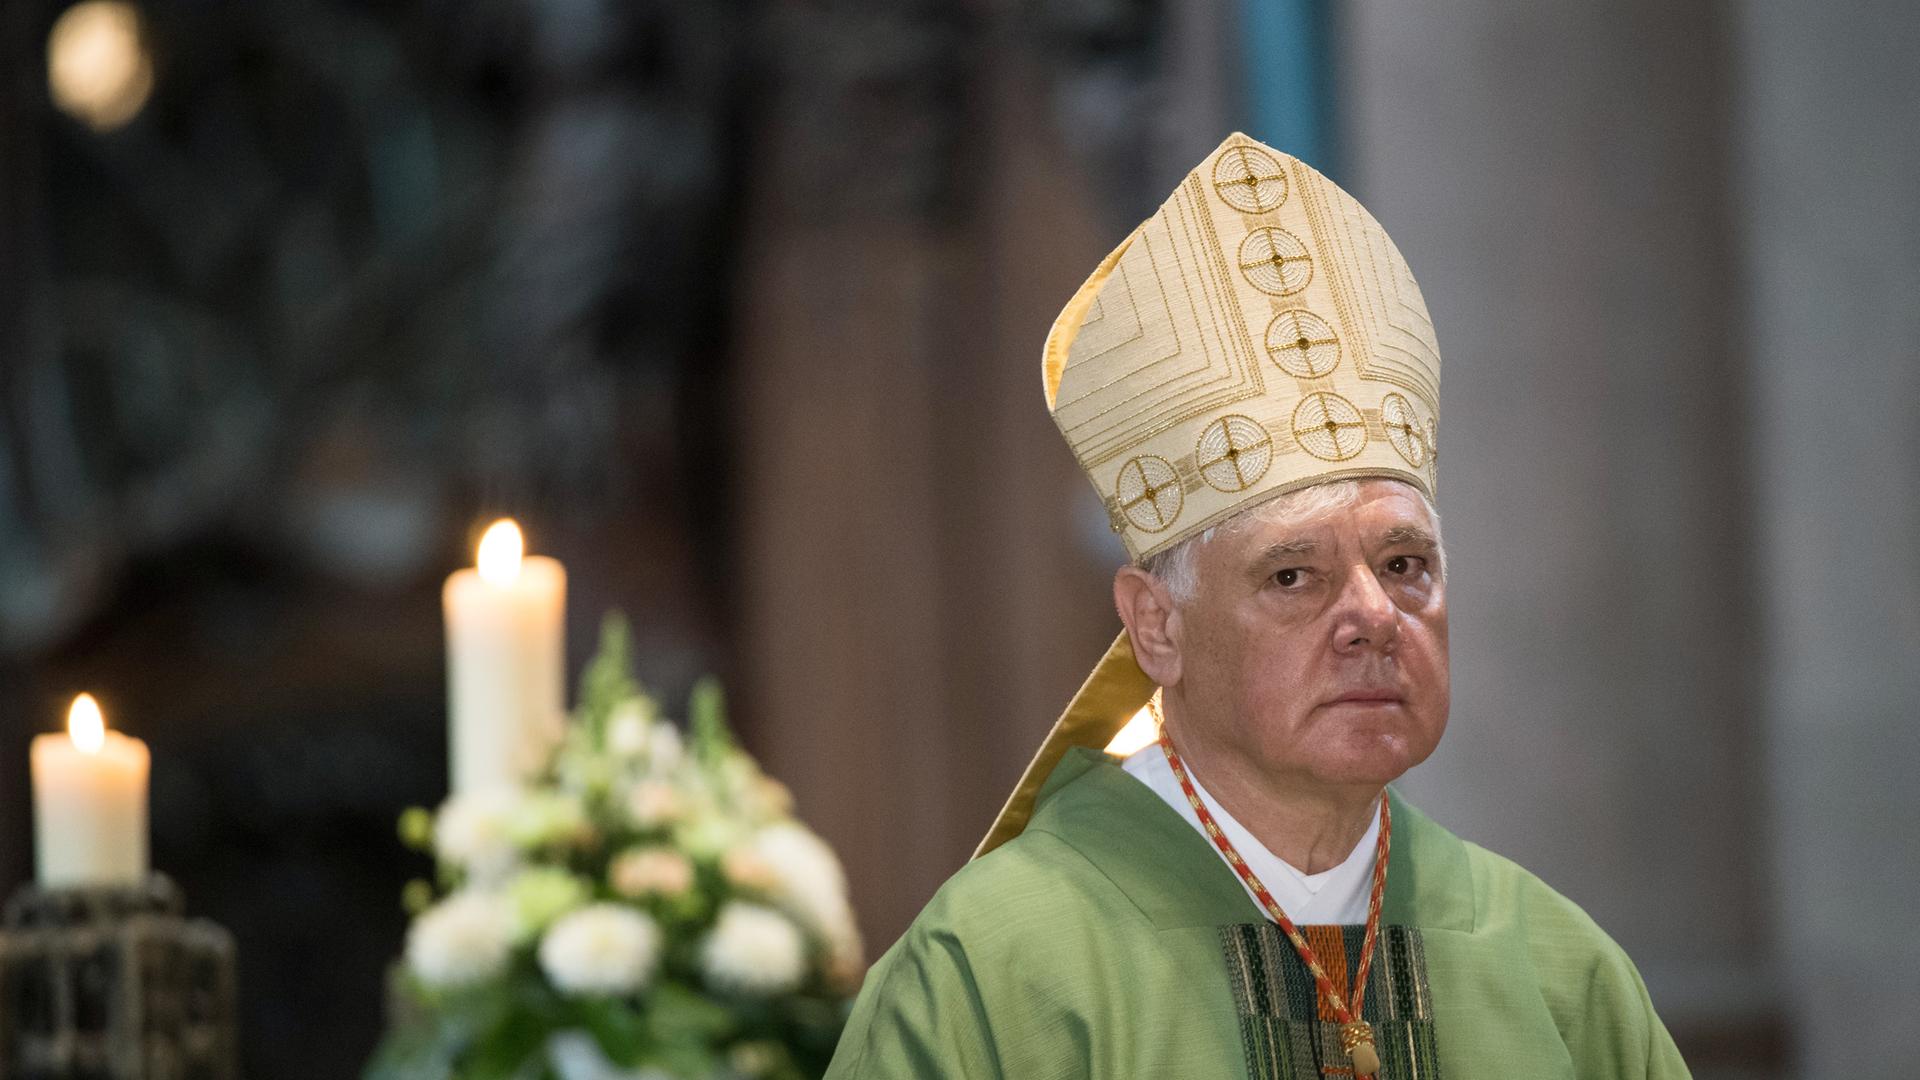 Kardinal Müller mit der Mitra auf dem Kopf guckt skeptisch in die Kamera. Im Hintergrund ist eine angezündete Kerze zu sehen.